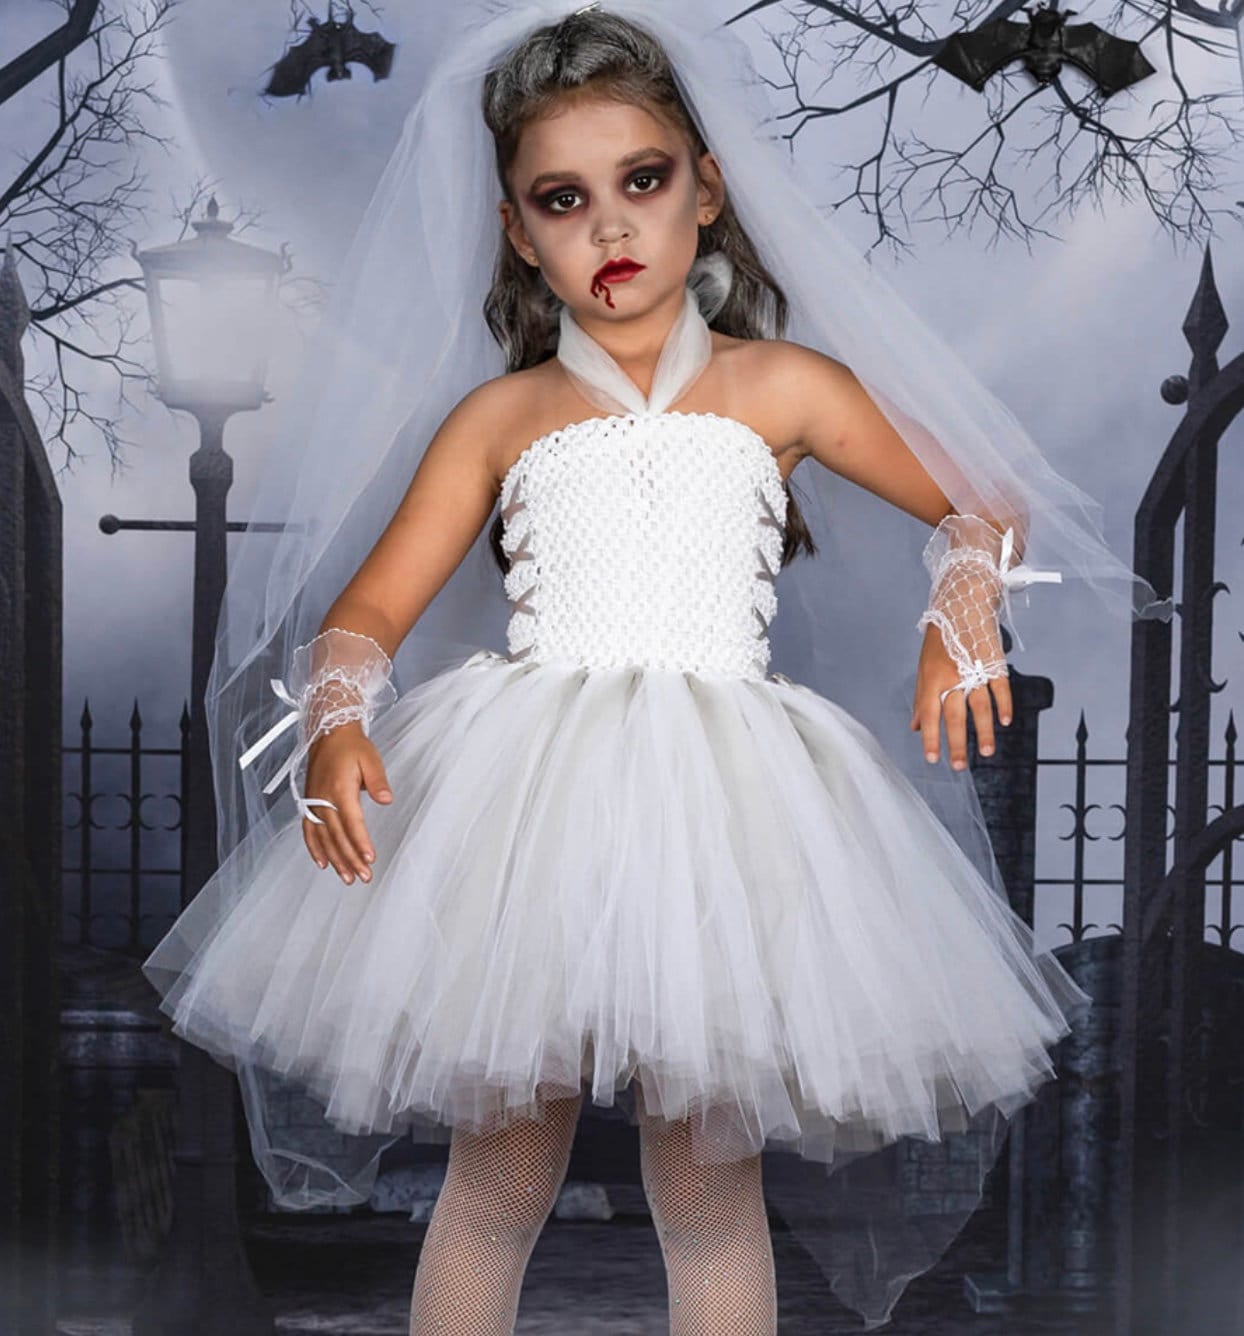 LMSXCT Women's Deluxe Victorian Ghost Bride Costume Halloween Cosplay  Outfits Zombie Bride Vampire Horror Fancy Dress